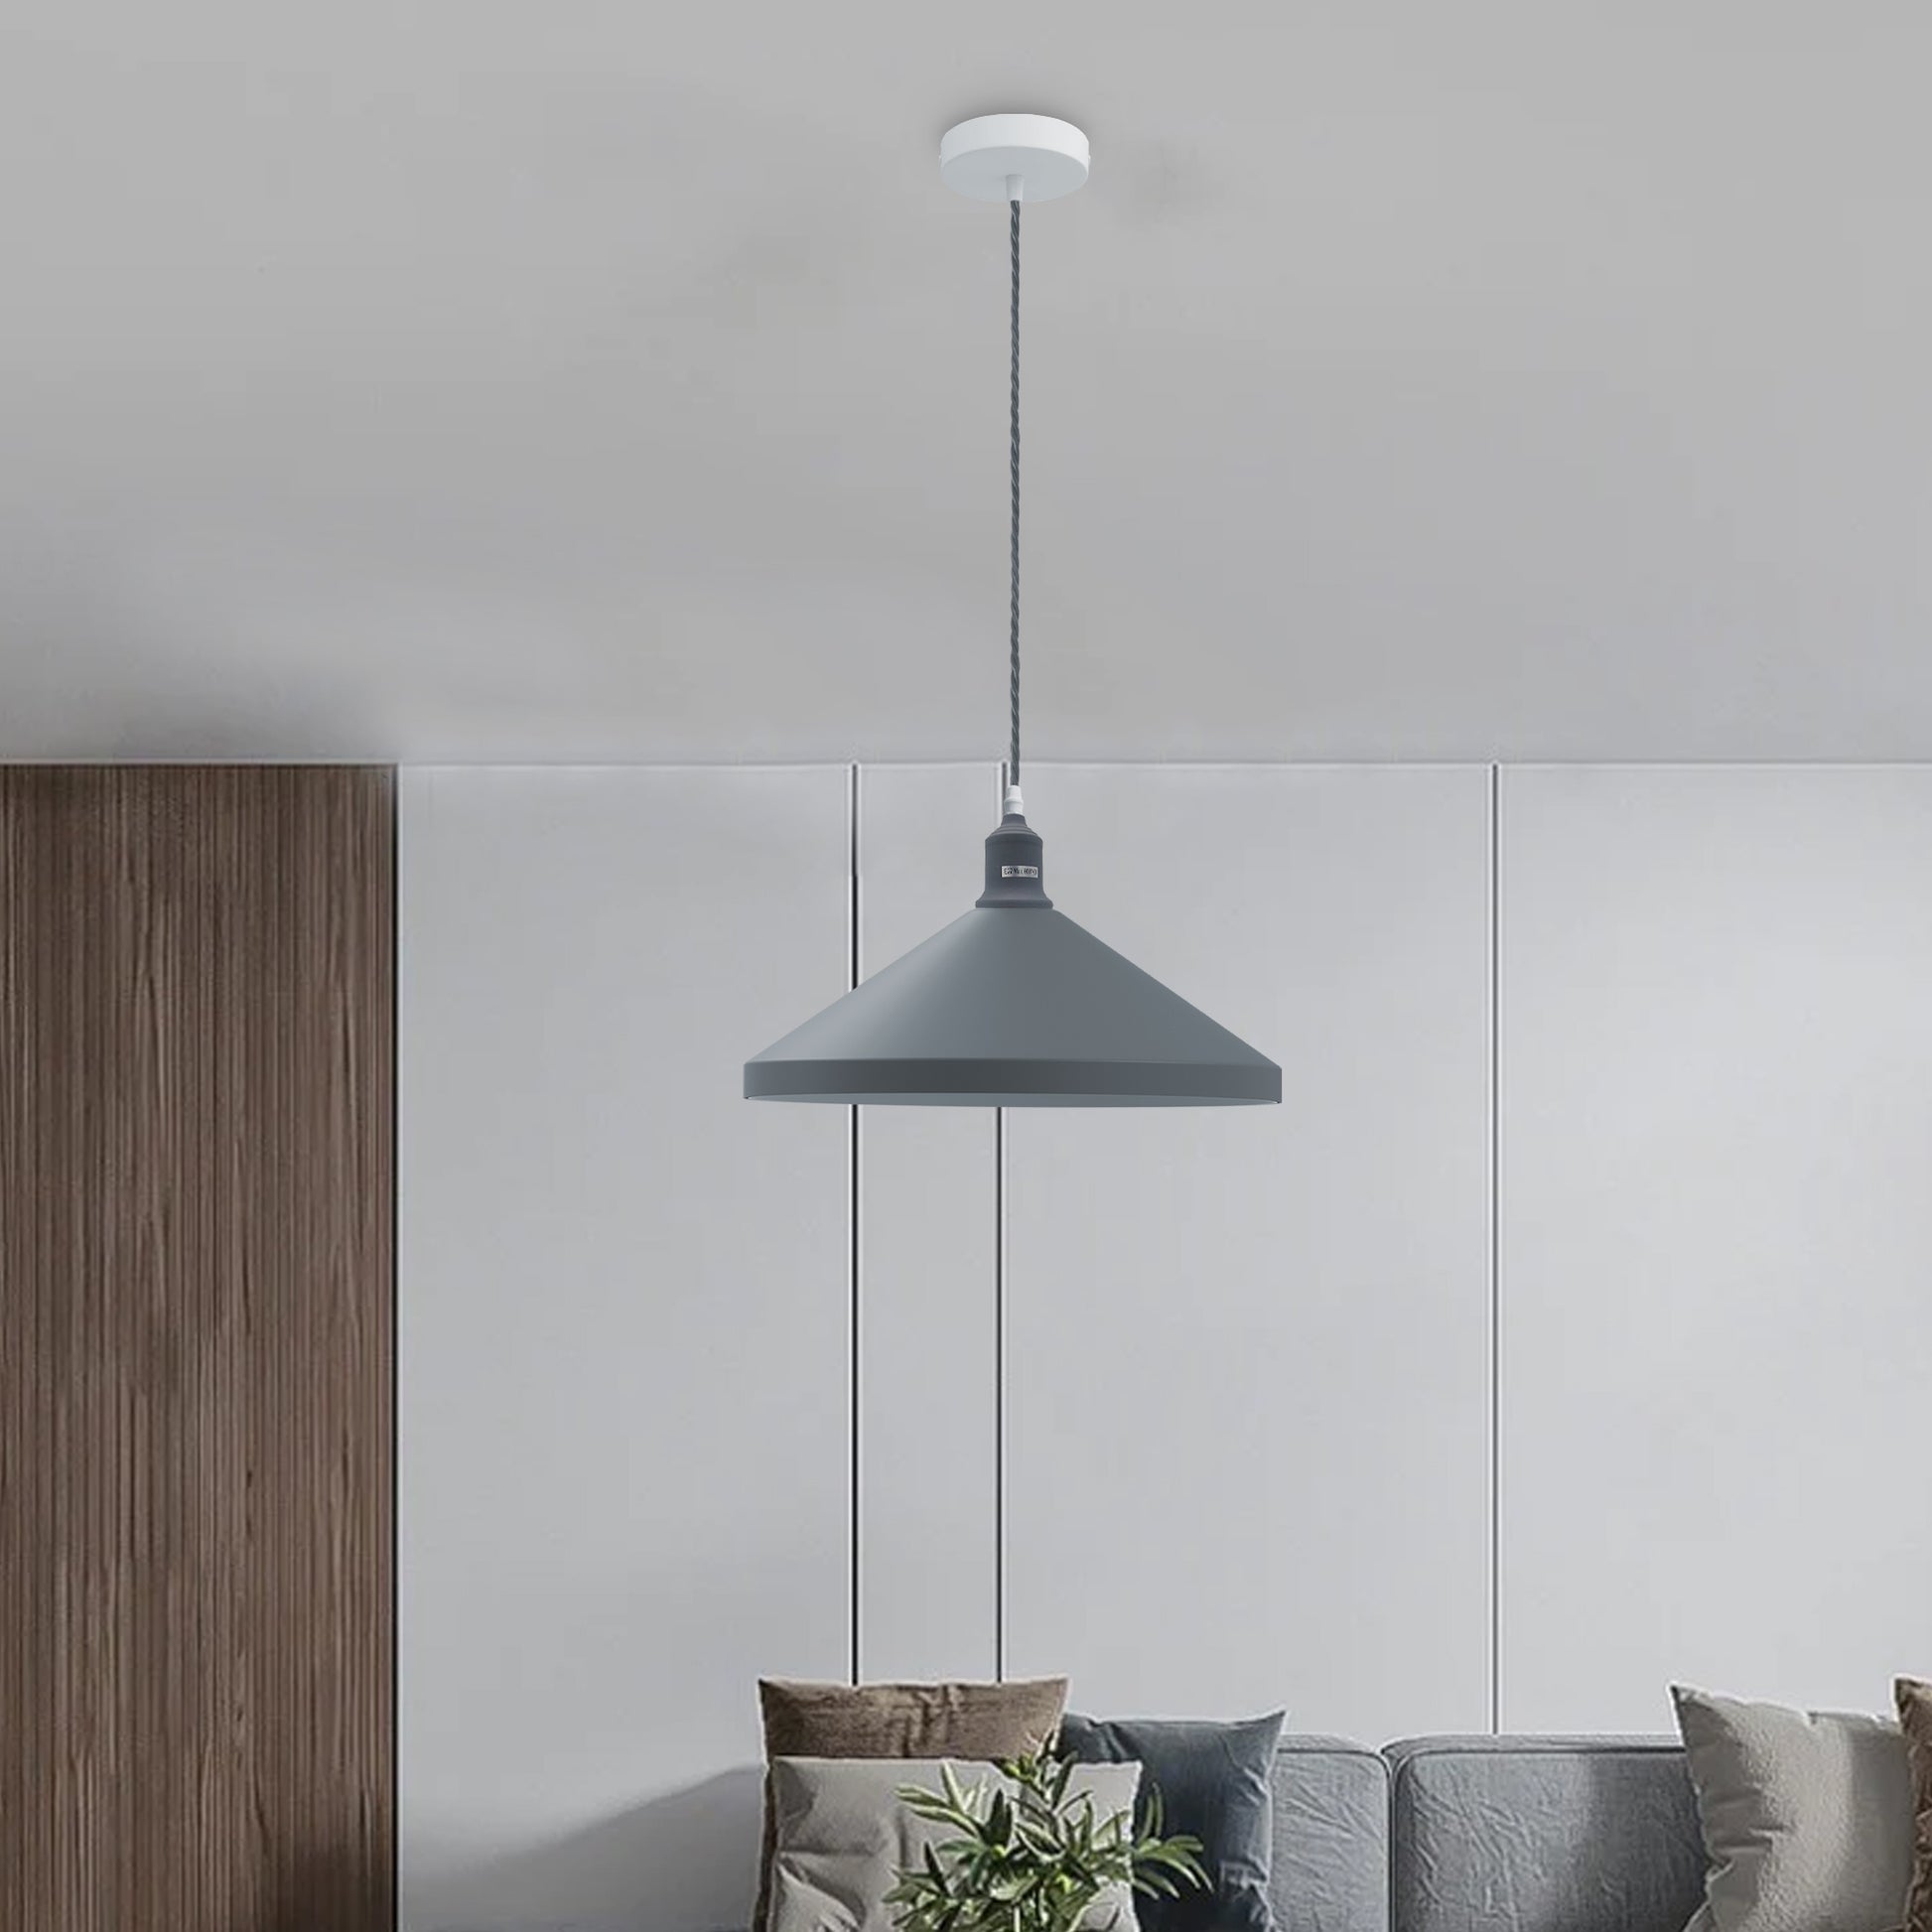 Gray ceiling pendant Lamp light